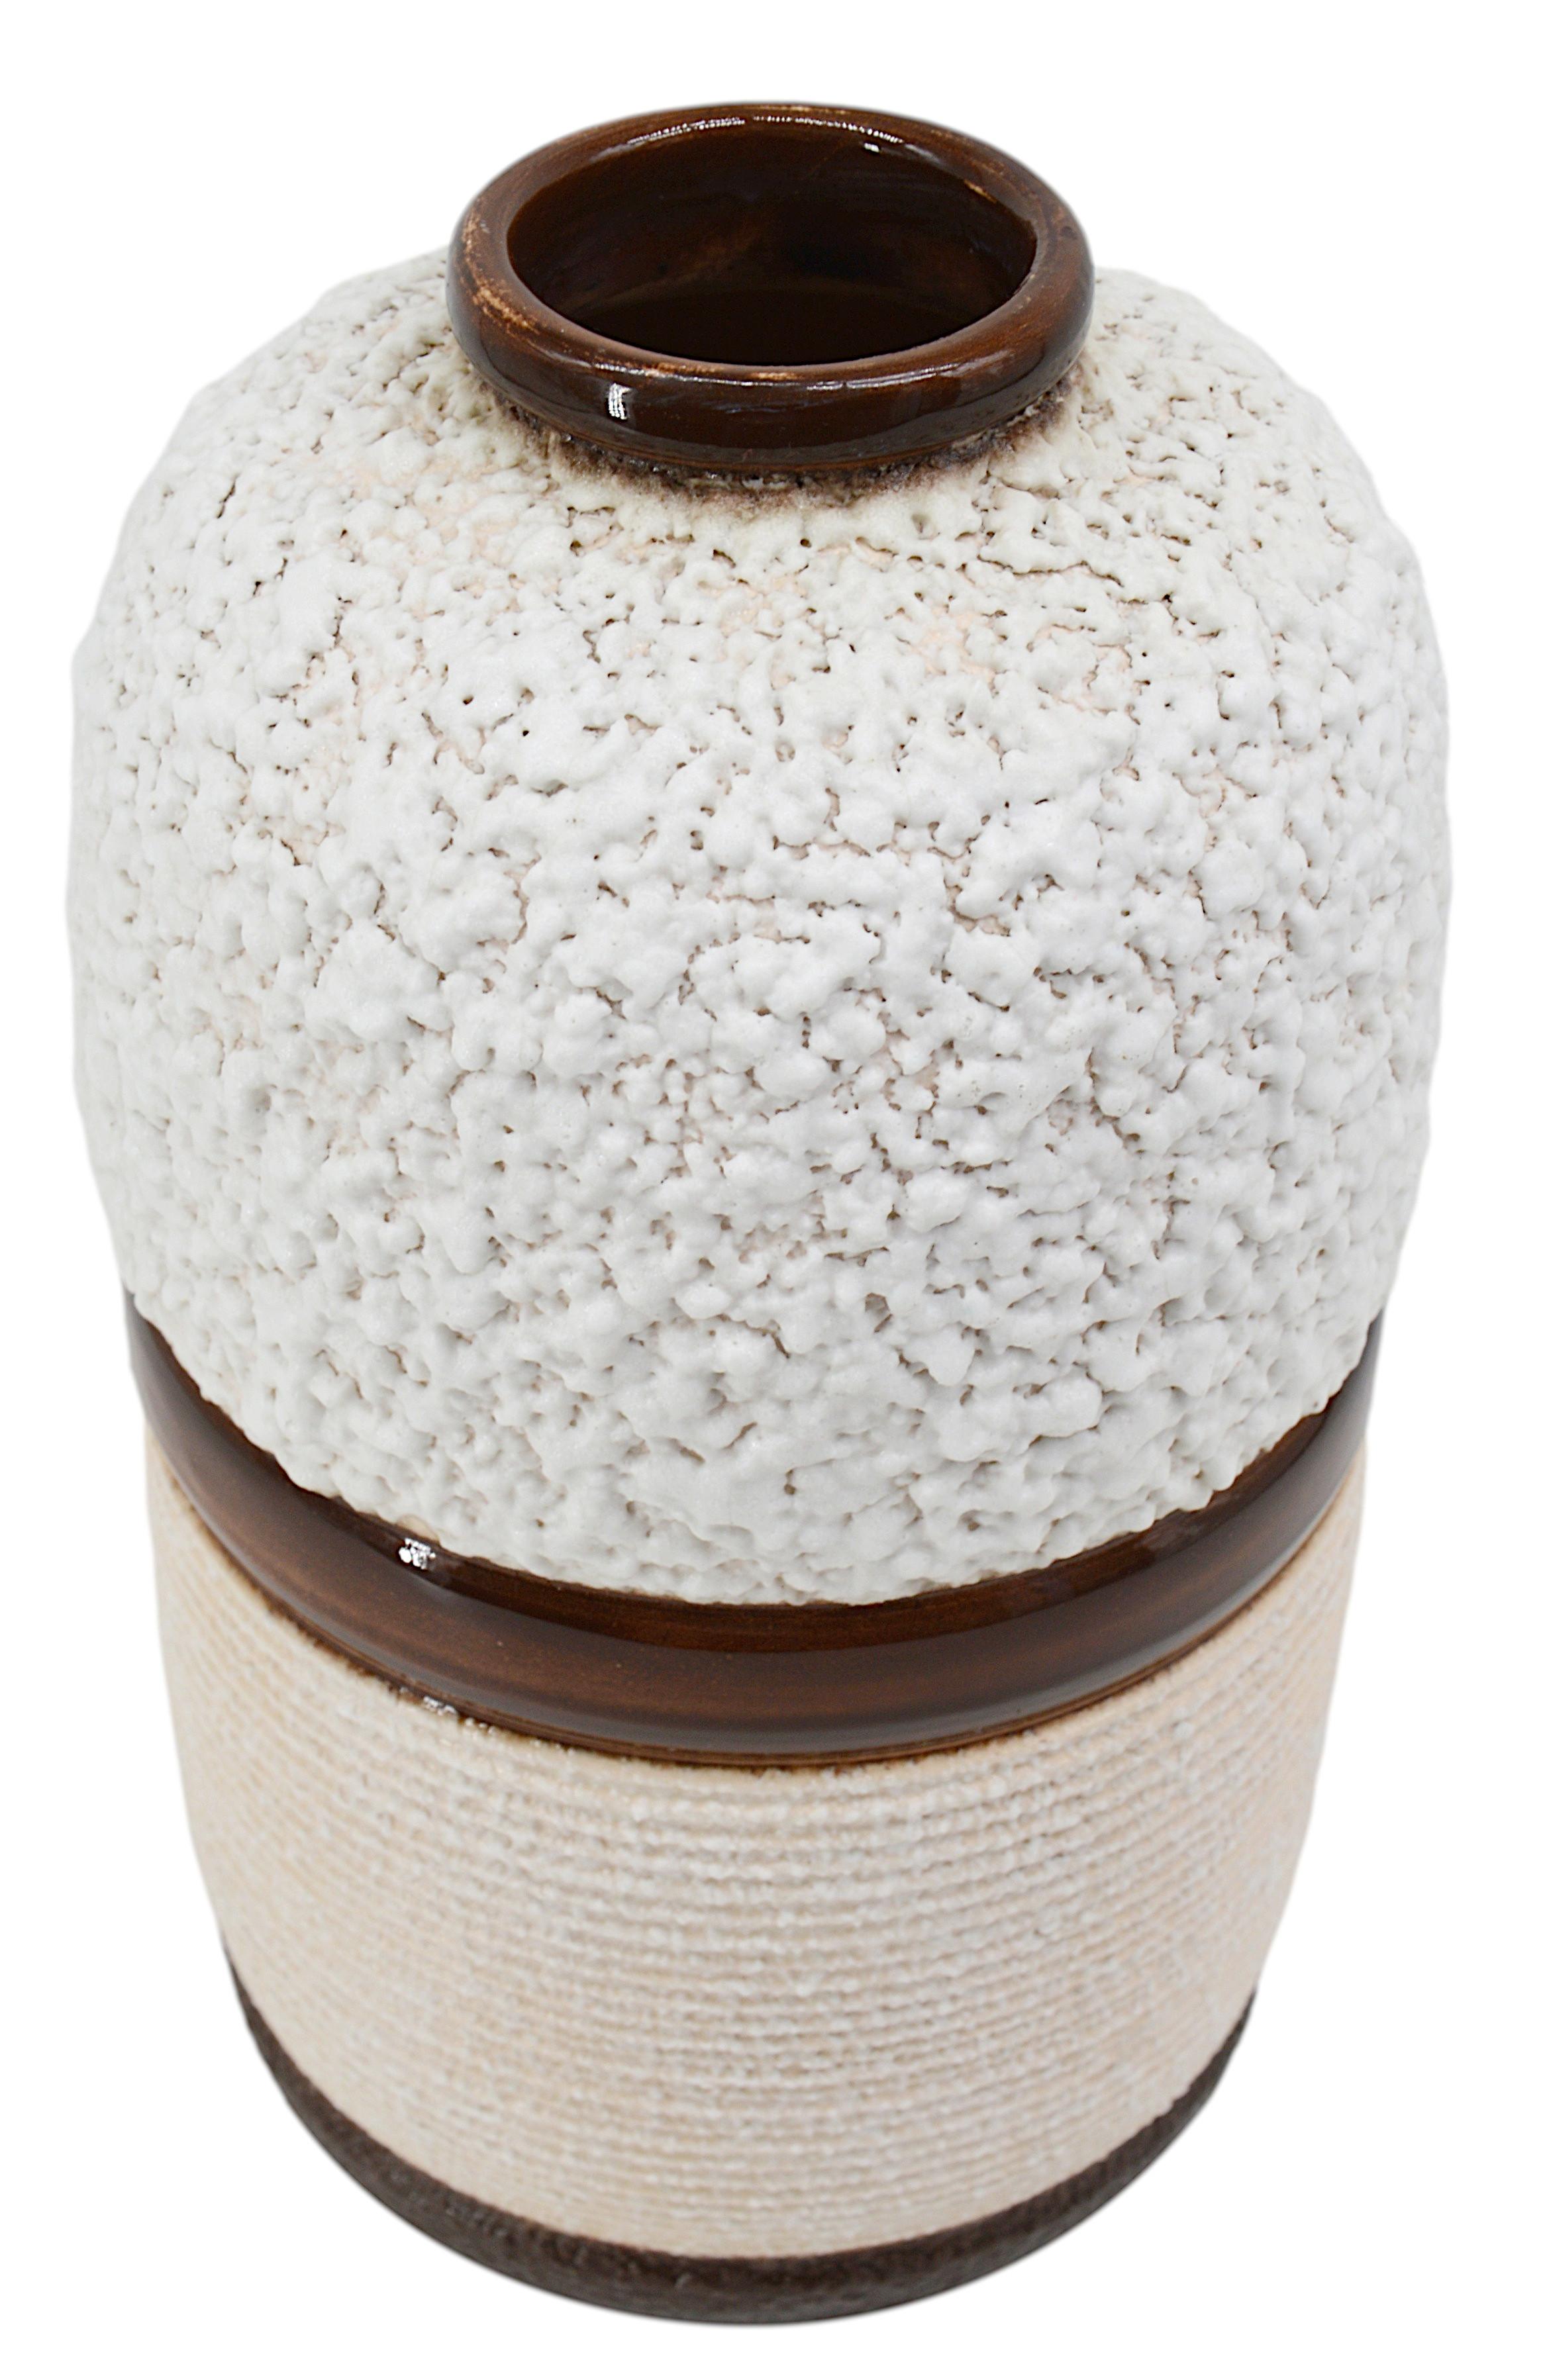 Französische Vase im Art déco-Stil von Louis DAGE (Antoni, Paris), Frankreich, ca. 1930. Steingut. Dekoration kompartimentiert durch glänzende braune konzentrische Bänder. Der obere Teil besteht aus klumpigen Applikationen aus weißem Schmelz und der